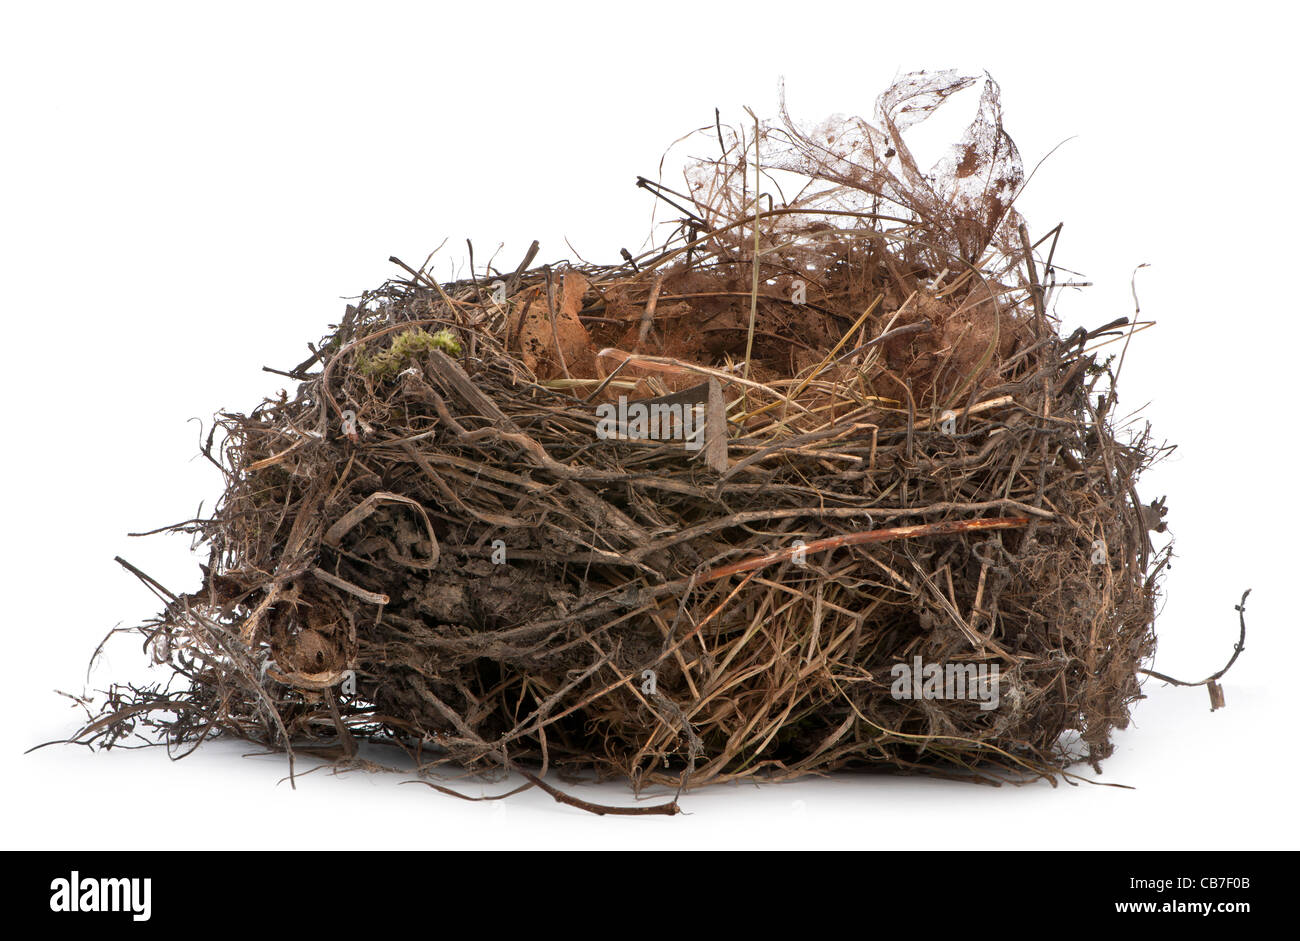 Centrar el apilamiento de un nido de mirlo común delante de un fondo blanco Foto de stock